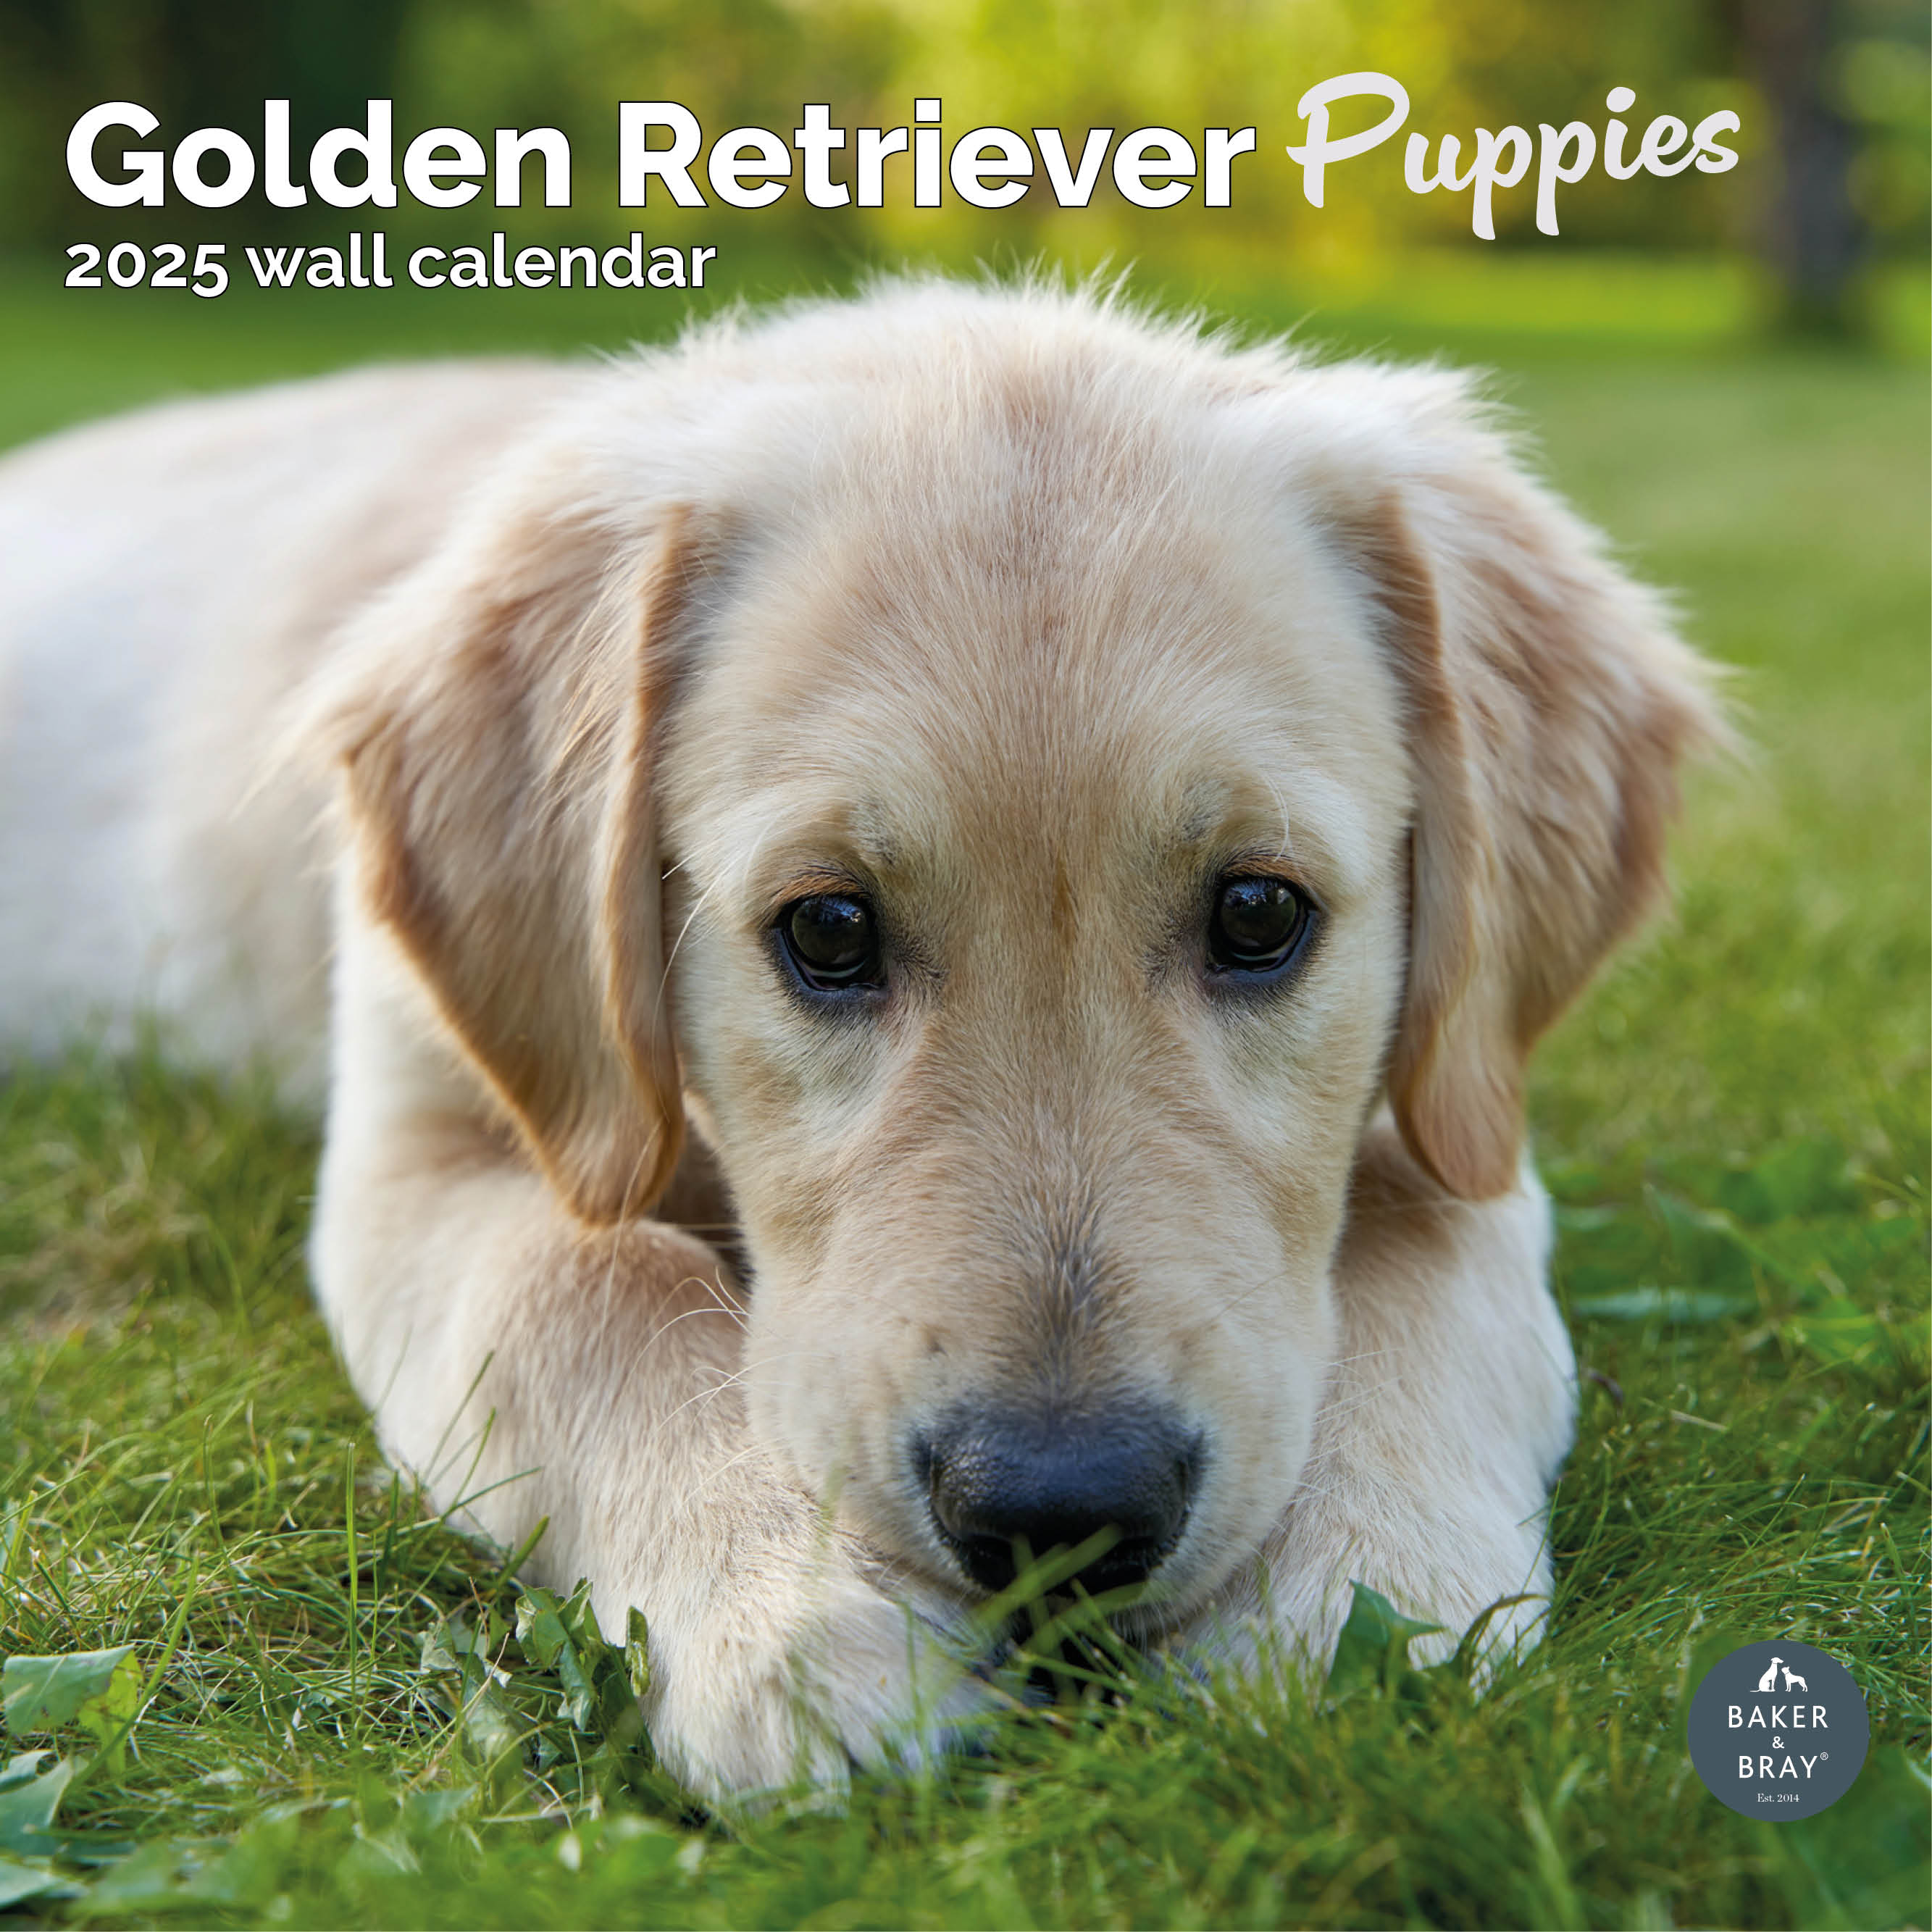 Golden Retriever Puppies Calendar 2025